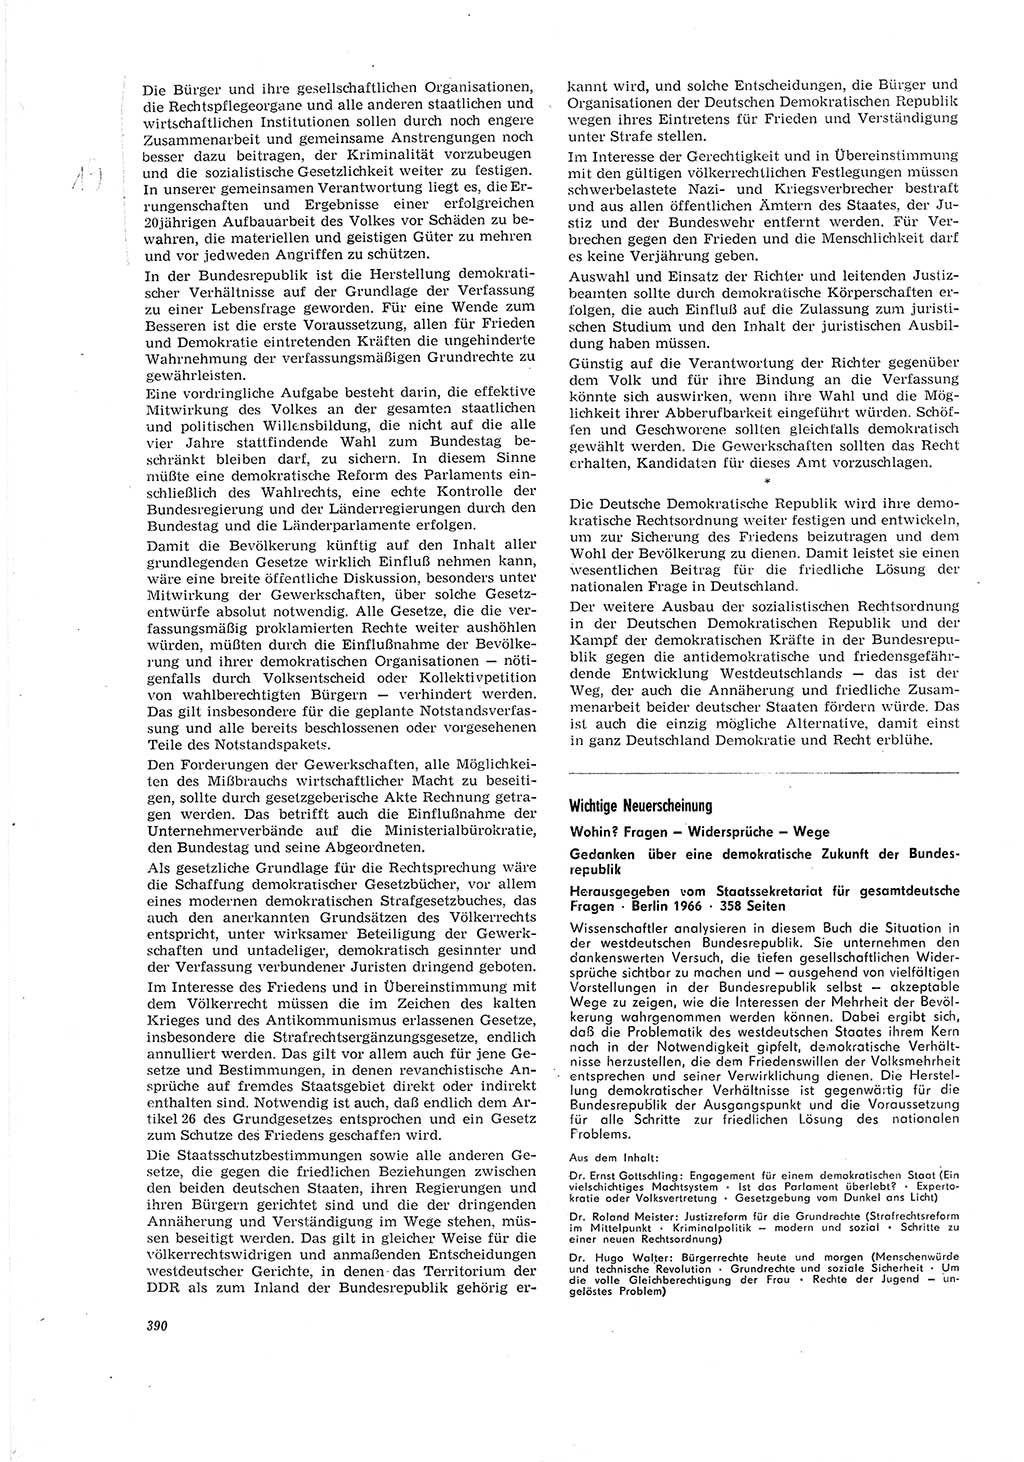 Neue Justiz (NJ), Zeitschrift für Recht und Rechtswissenschaft [Deutsche Demokratische Republik (DDR)], 20. Jahrgang 1966, Seite 390 (NJ DDR 1966, S. 390)